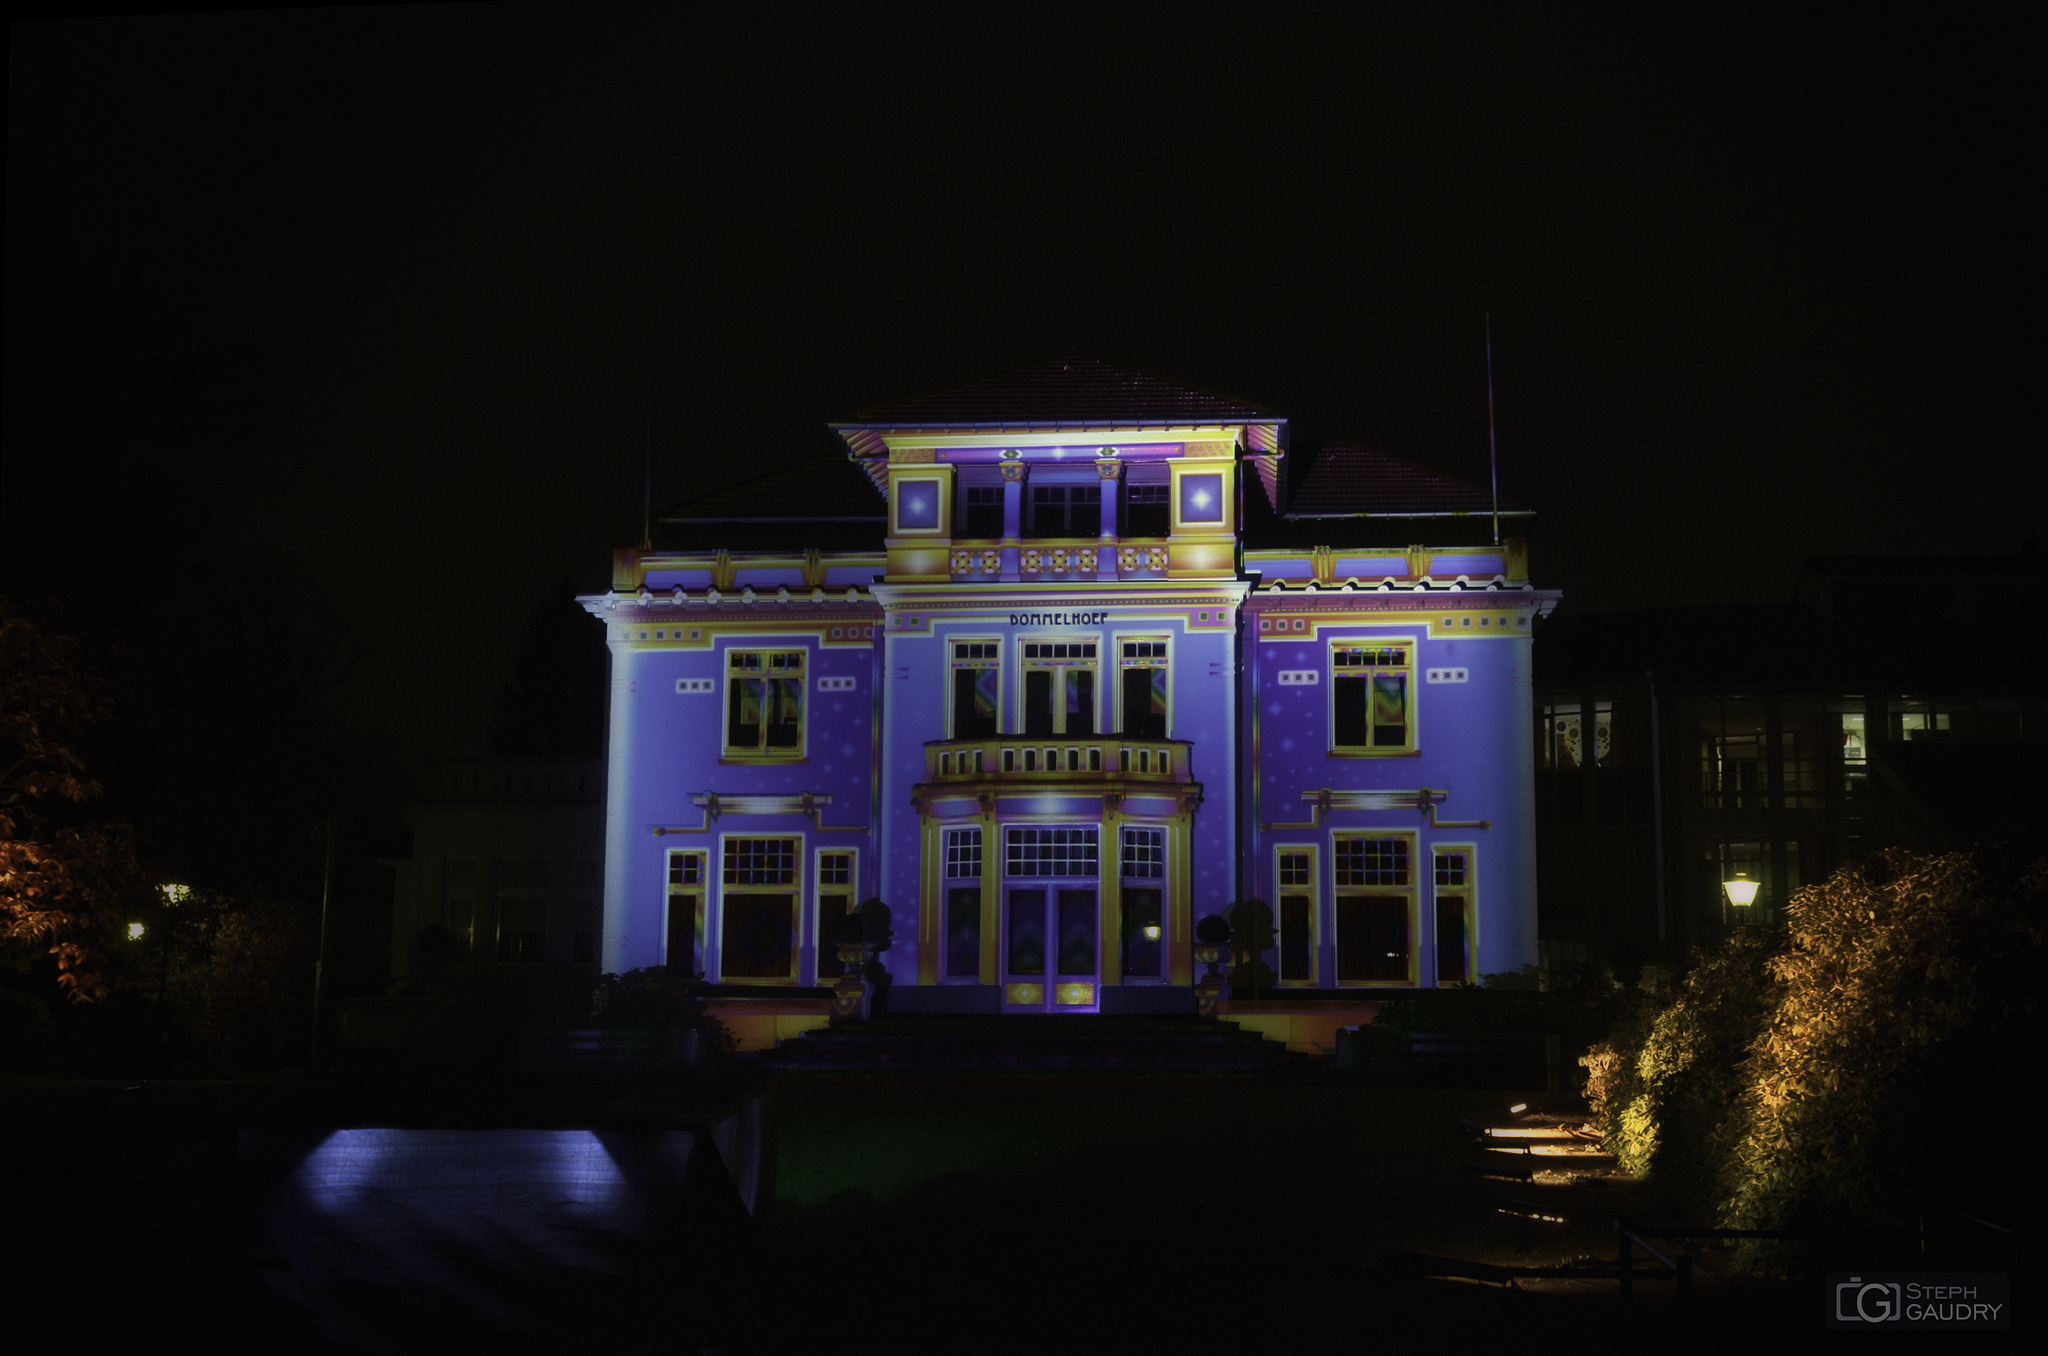 Eindhoven glow 2013 - CHROMOLITHE (v1)